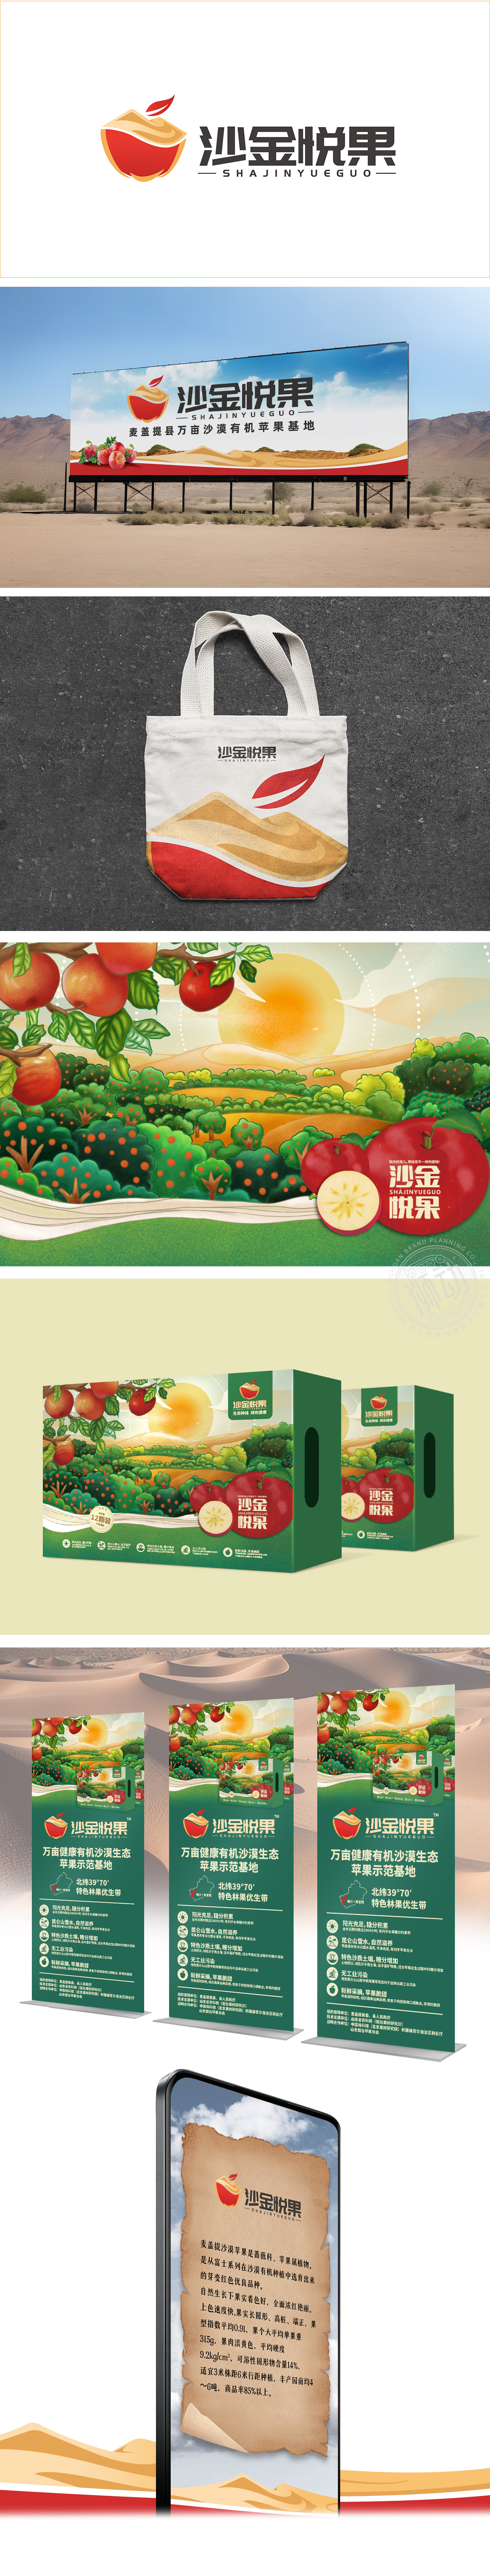 沙金悦果西部沙漠水果供应链产品品牌